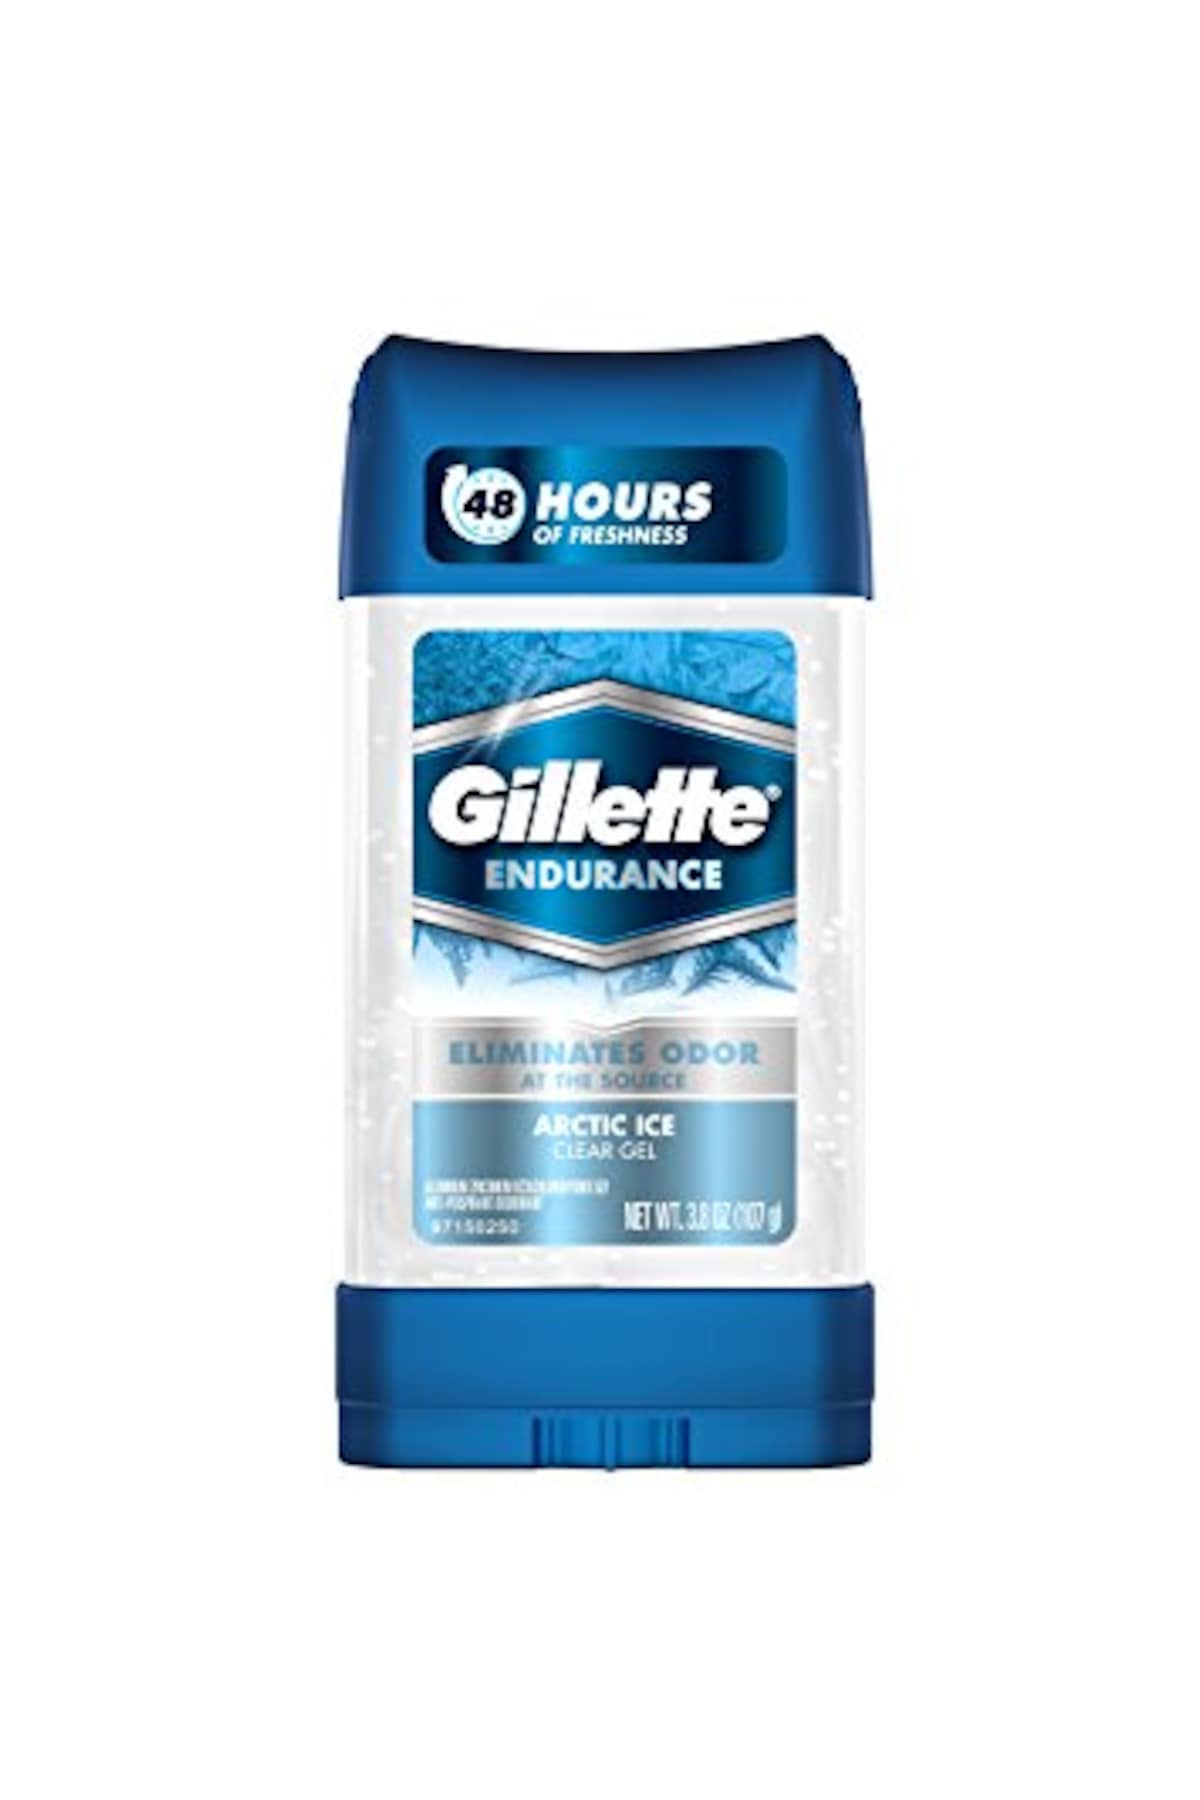 Gillette Arctic Ice Antiperspirant Deodorant Jel 107GR Fiyatları ve